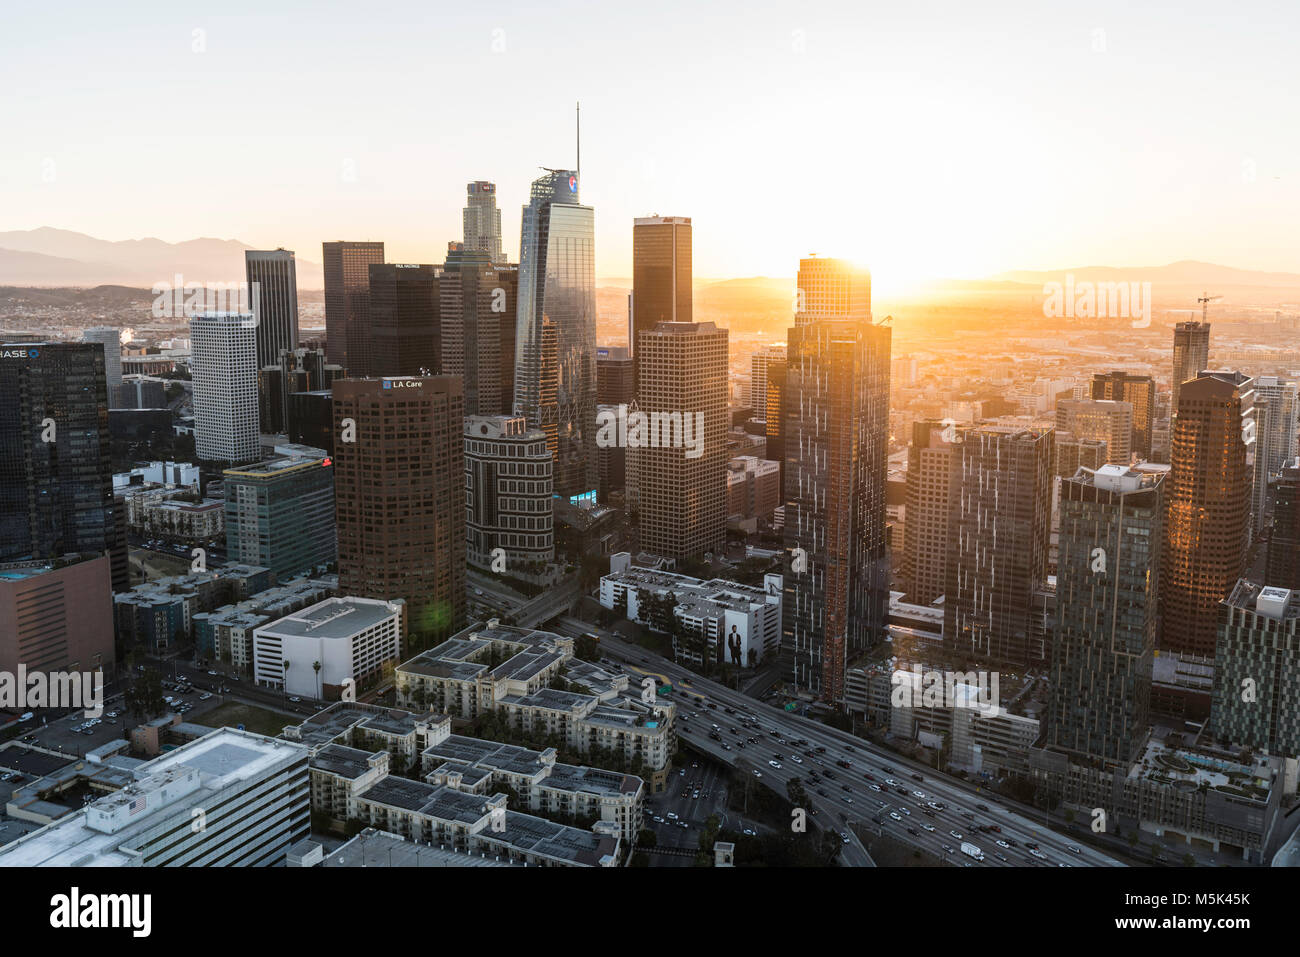 Los Angeles, Californie, USA - 20 Février 2018 : Vue aérienne de l'aménagement urbain du centre-ville de Los Angeles skyline au lever du soleil. Banque D'Images